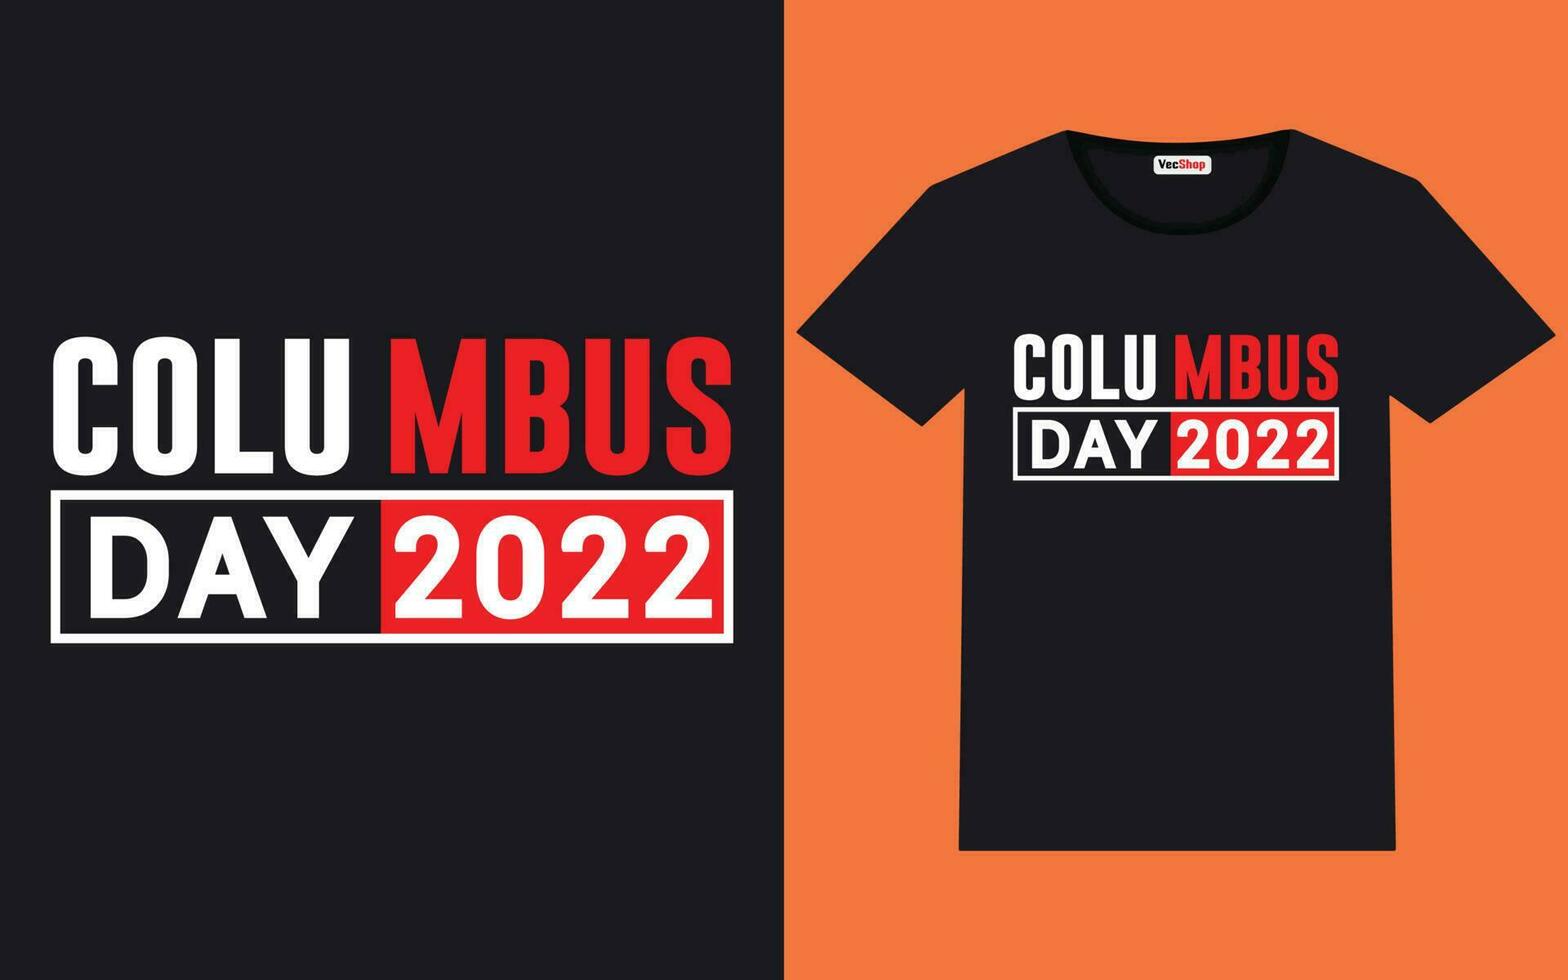 trendige columbus day-typografie und grafisches t-shirt-design vektor